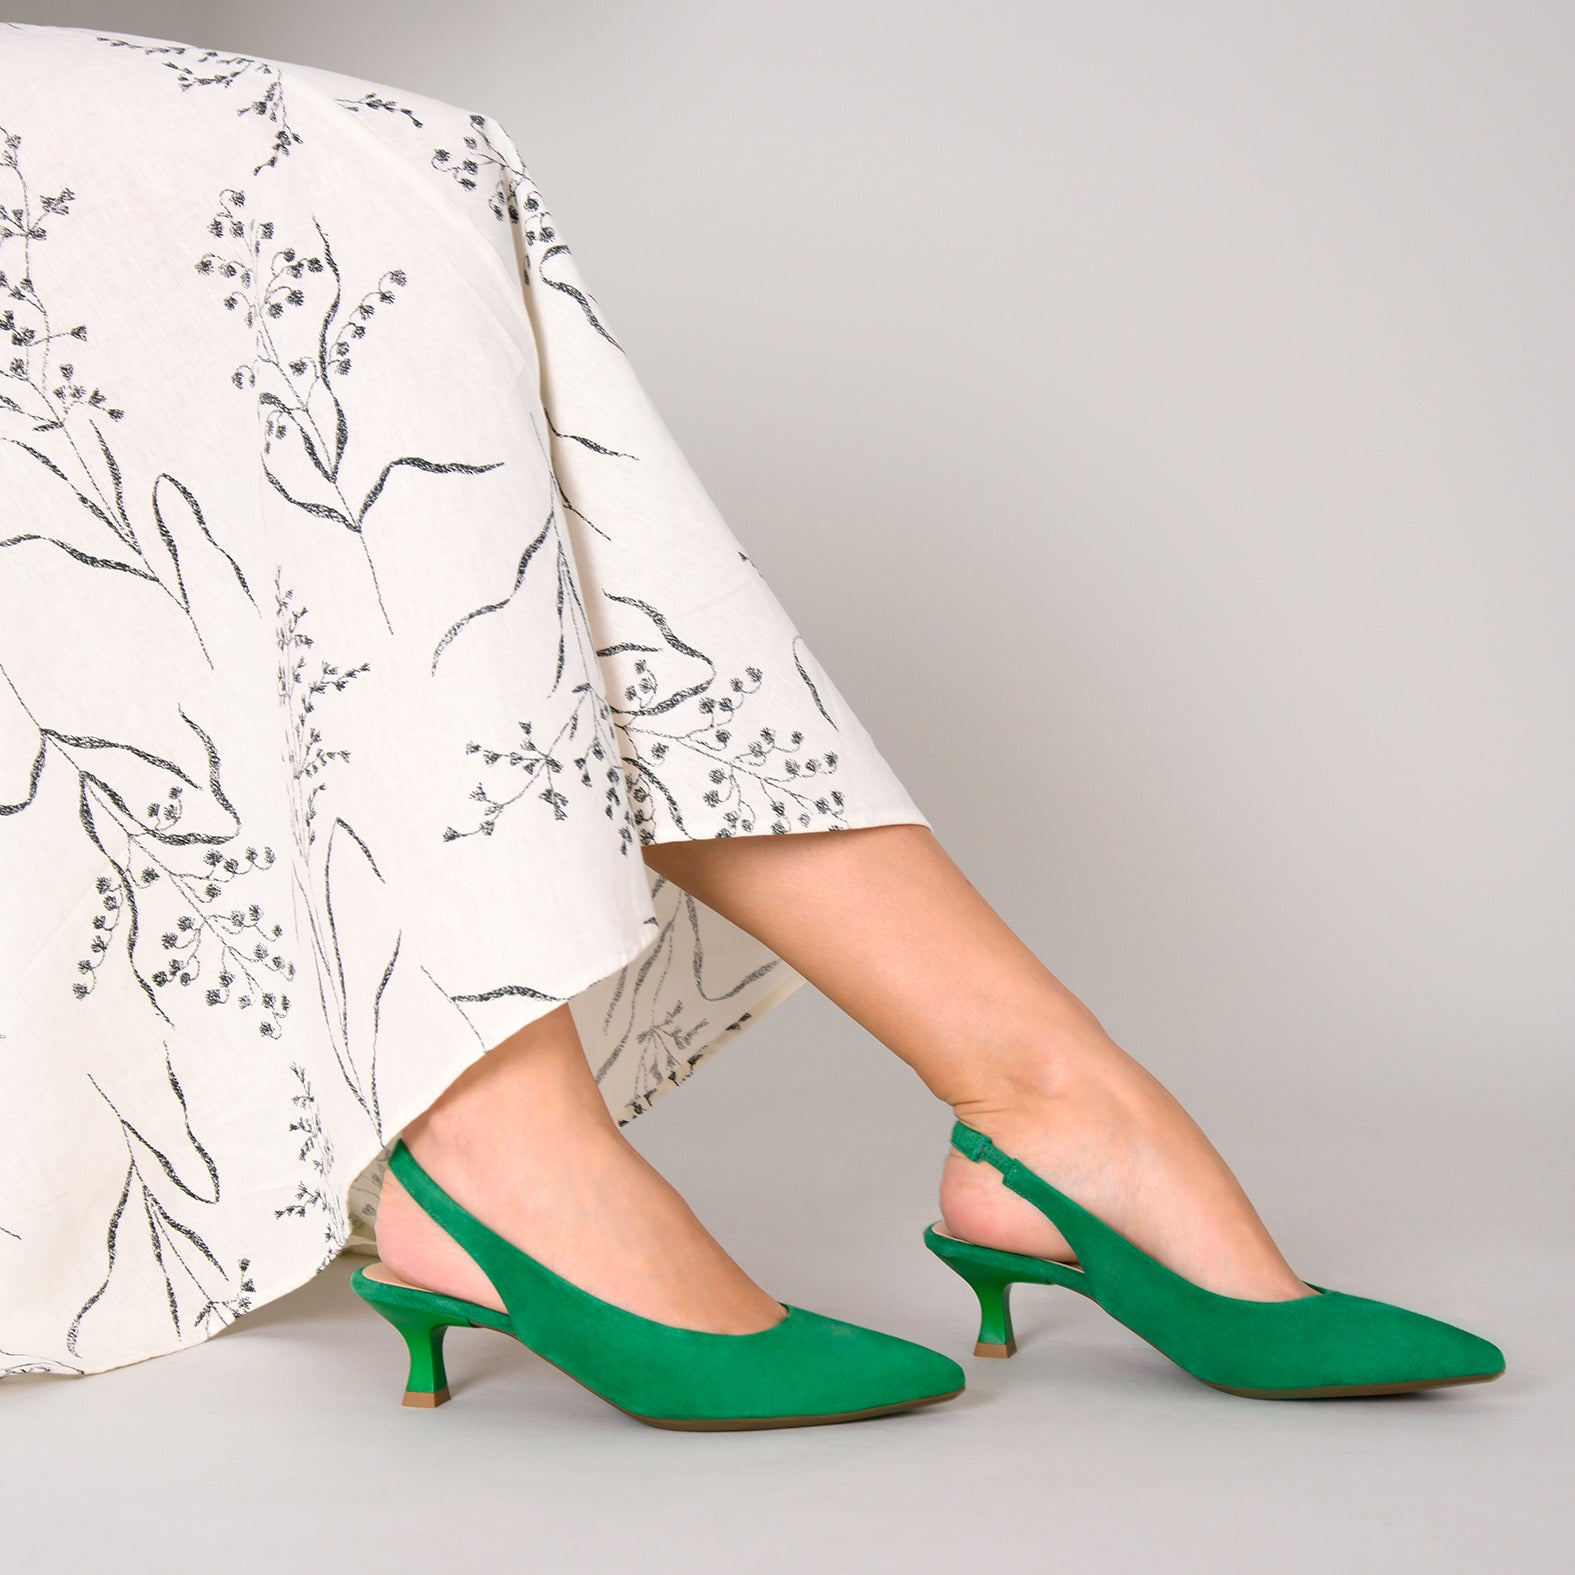 KITTEN – GREEN low heel slingback